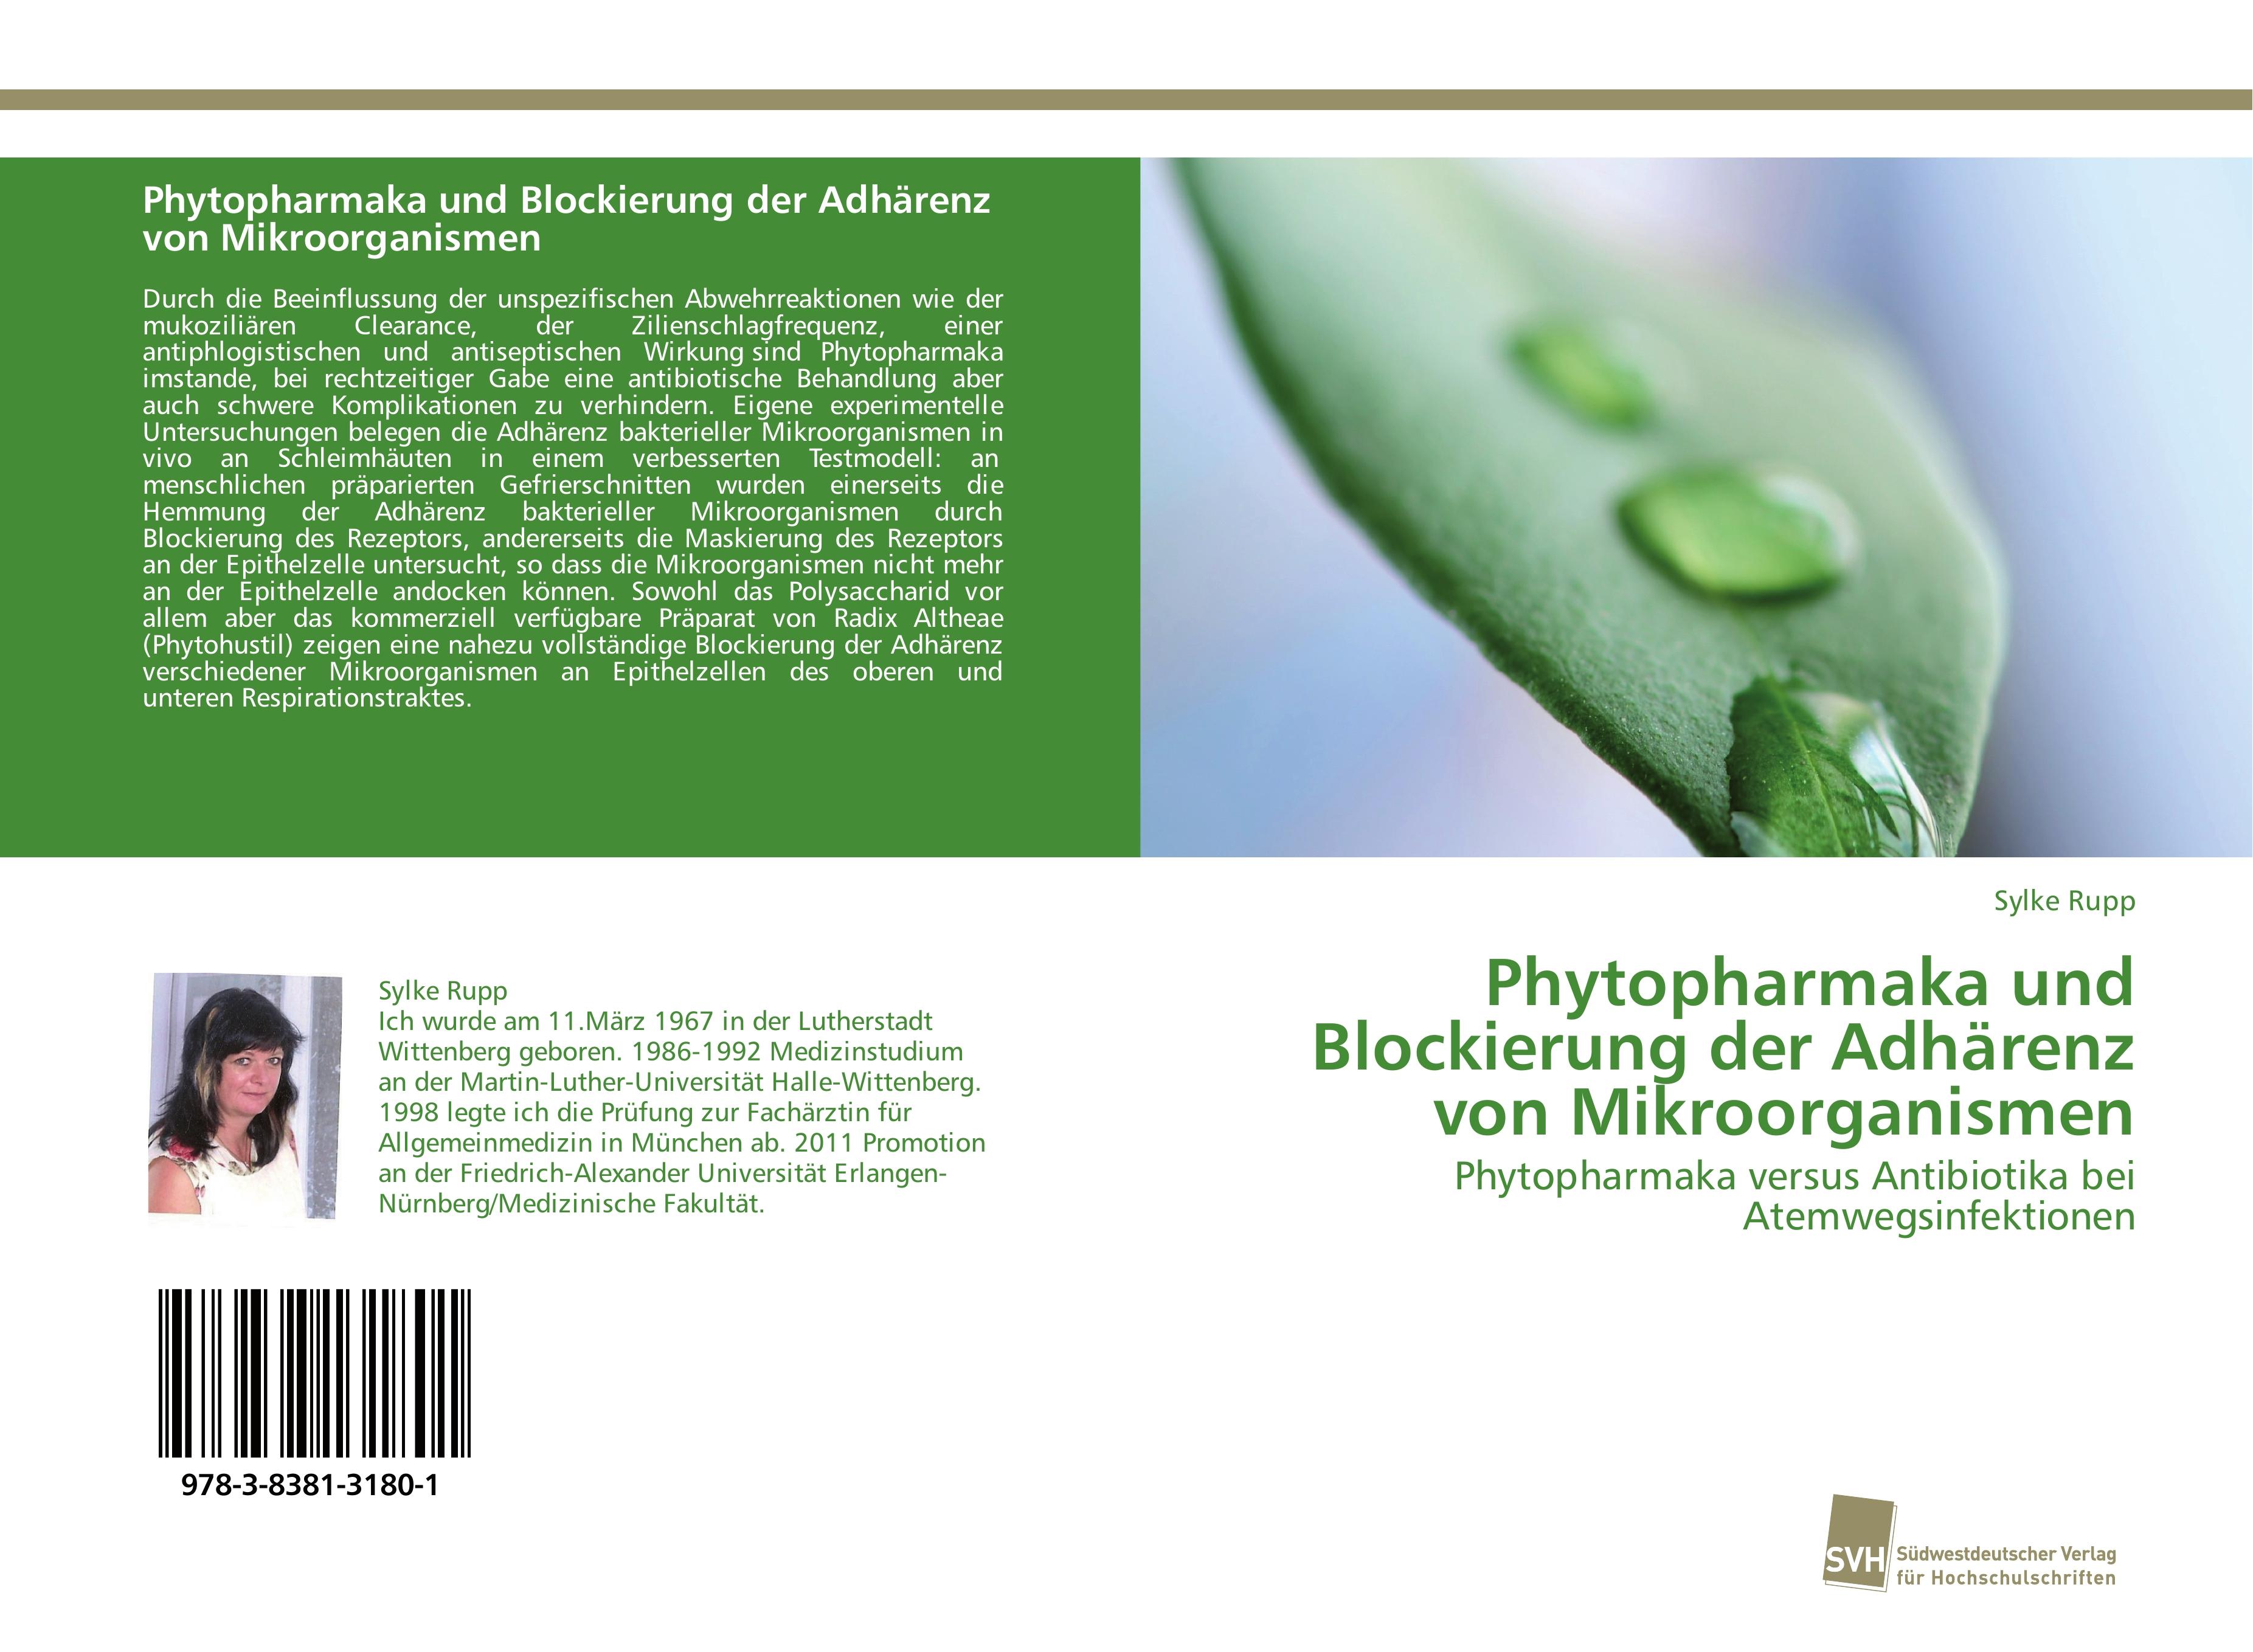 Phytopharmaka und Blockierung der Adhaerenz von Mikroorganismen - Sylke Rupp